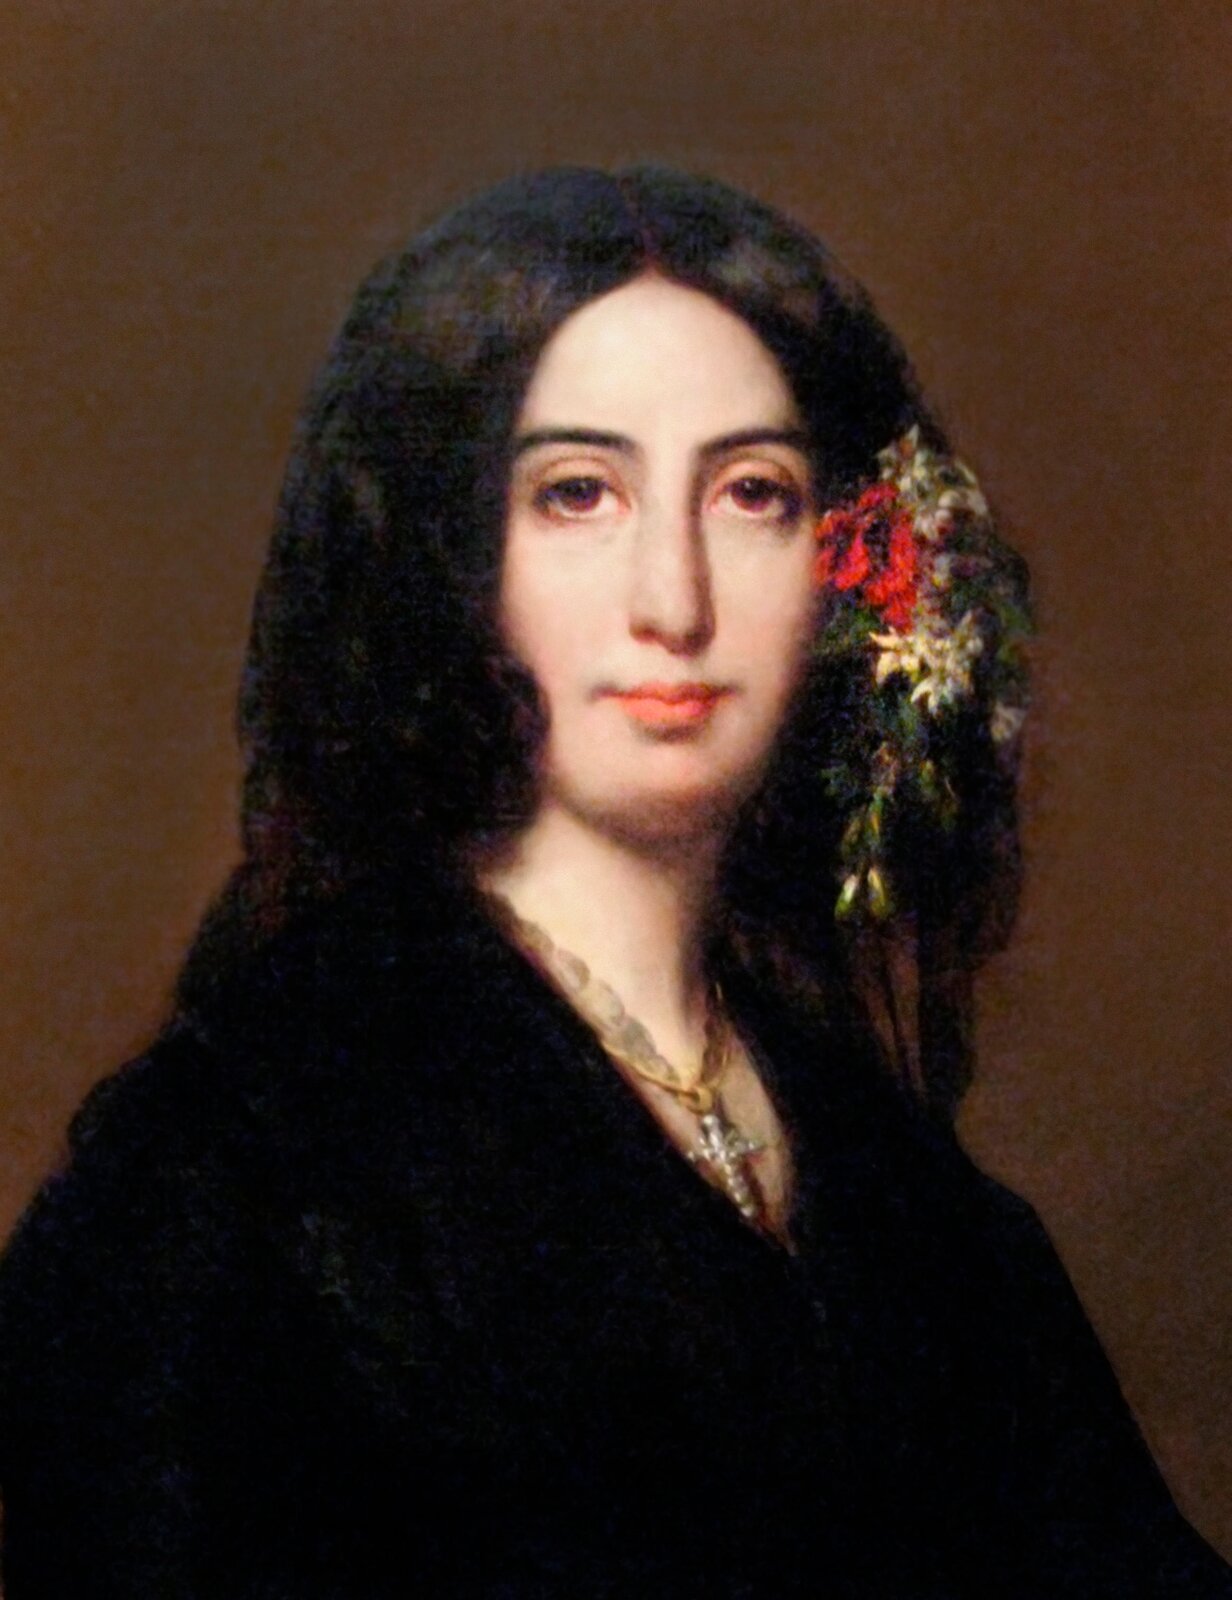 Obraz przedstawia portret George Sand. Młoda kobieta o kruczych, długich włosach. We włosy wpięty ma wianek ze świeżych kwiatów. Ubrana w czarny strój, na szyi ma duży krzyż na łańcuszku.